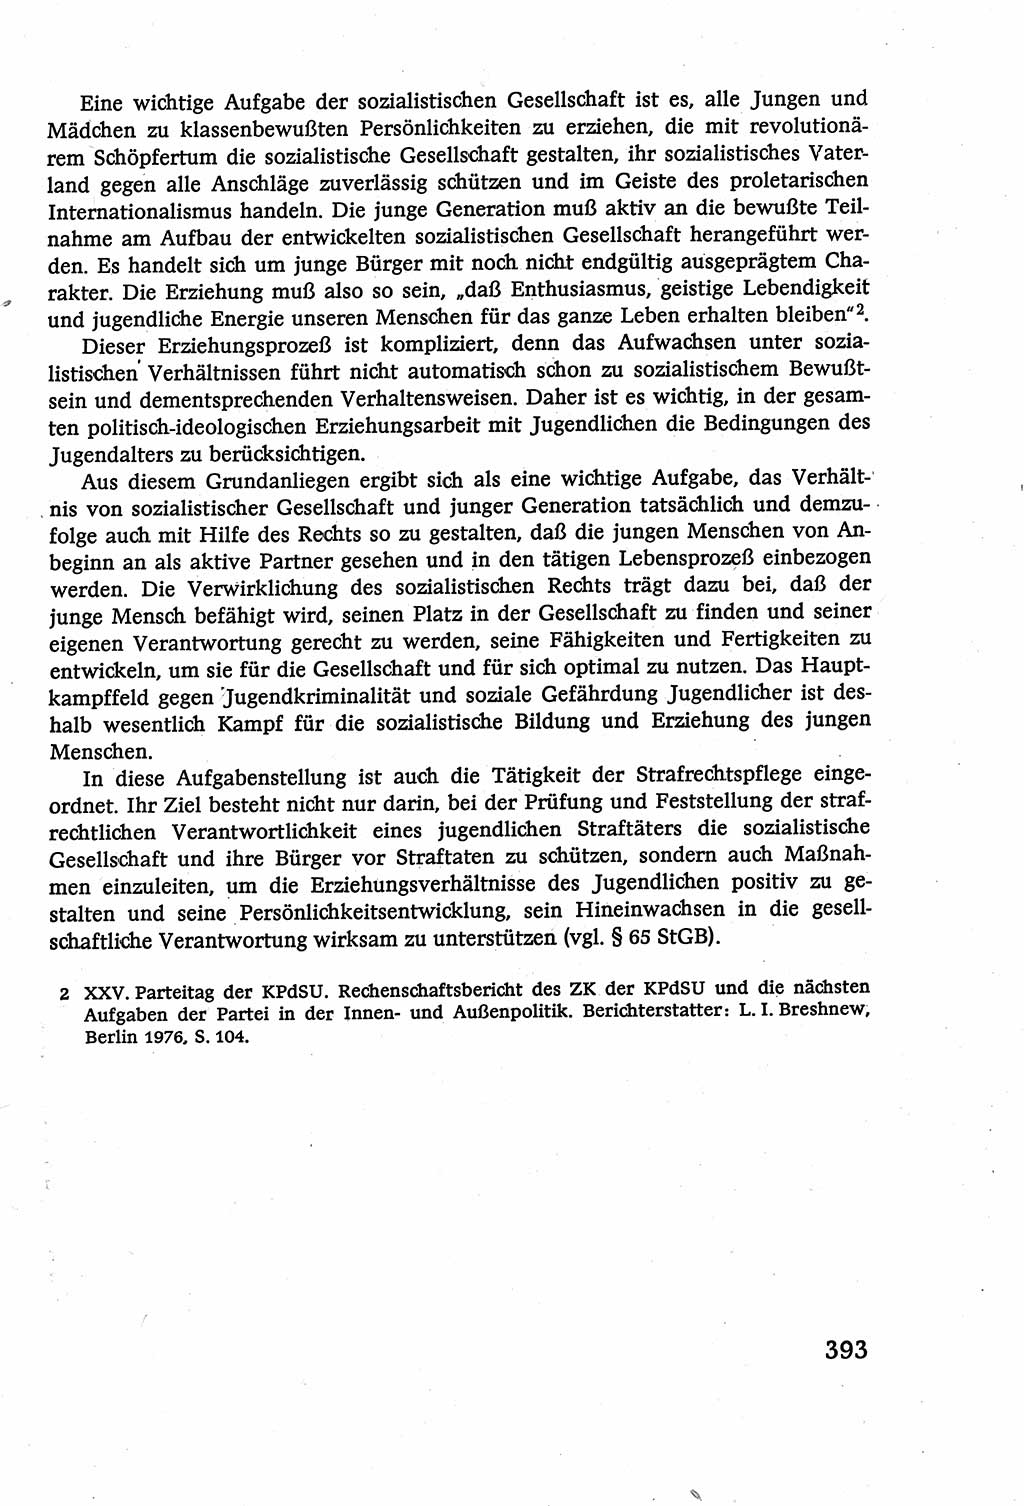 Strafverfahrensrecht [Deutsche Demokratische Republik (DDR)], Lehrbuch 1977, Seite 393 (Strafverf.-R. DDR Lb. 1977, S. 393)